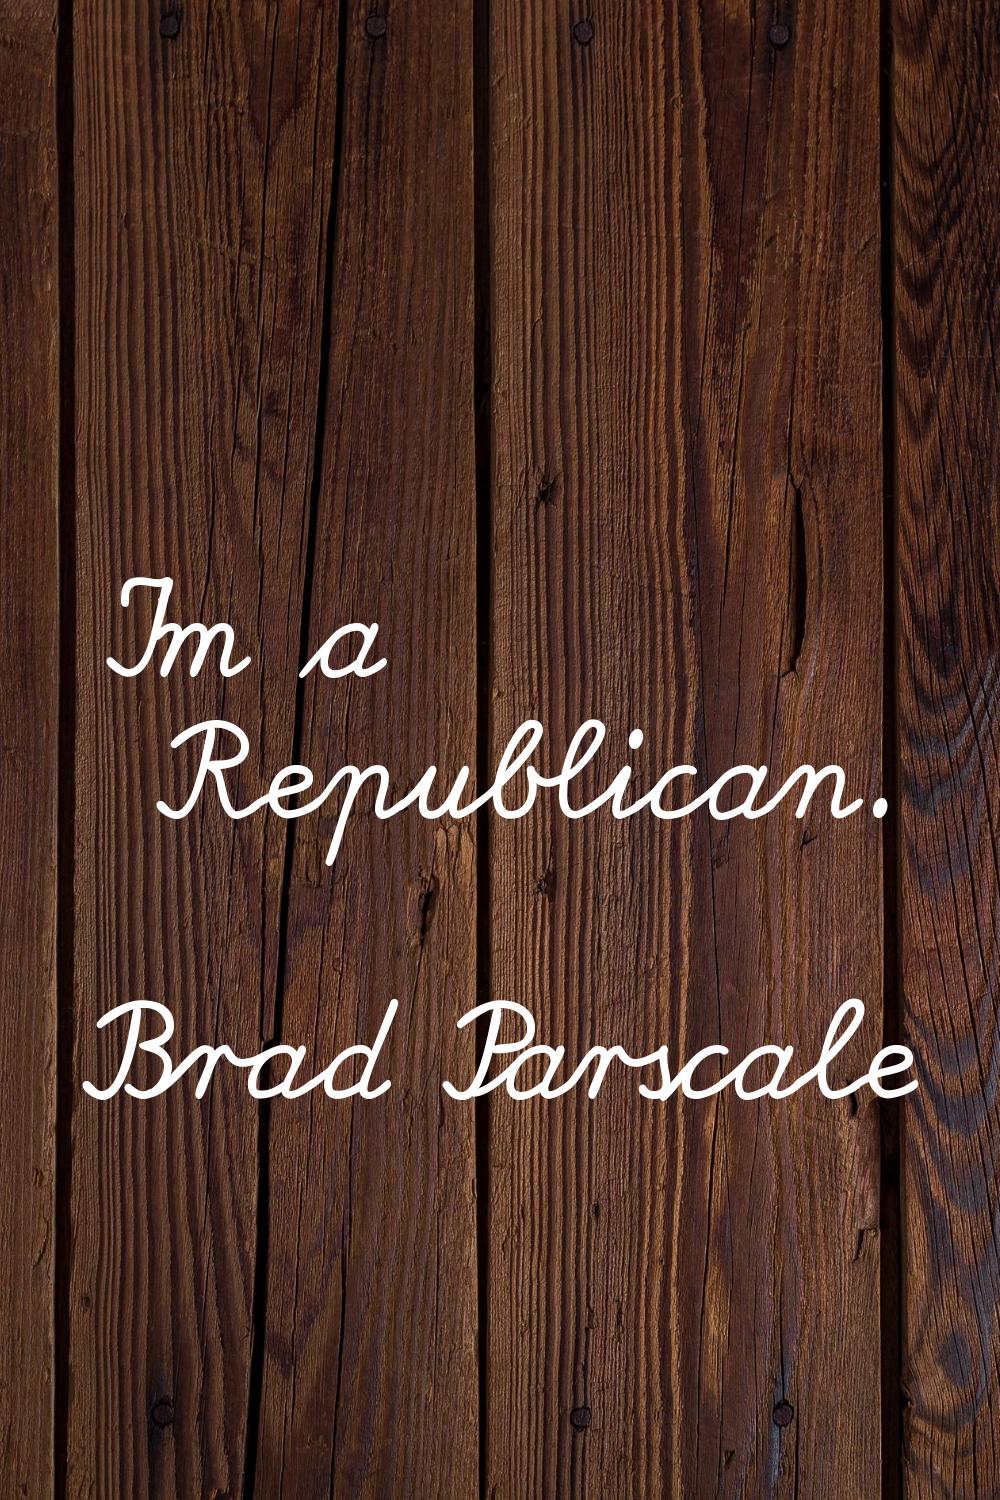 I'm a Republican.